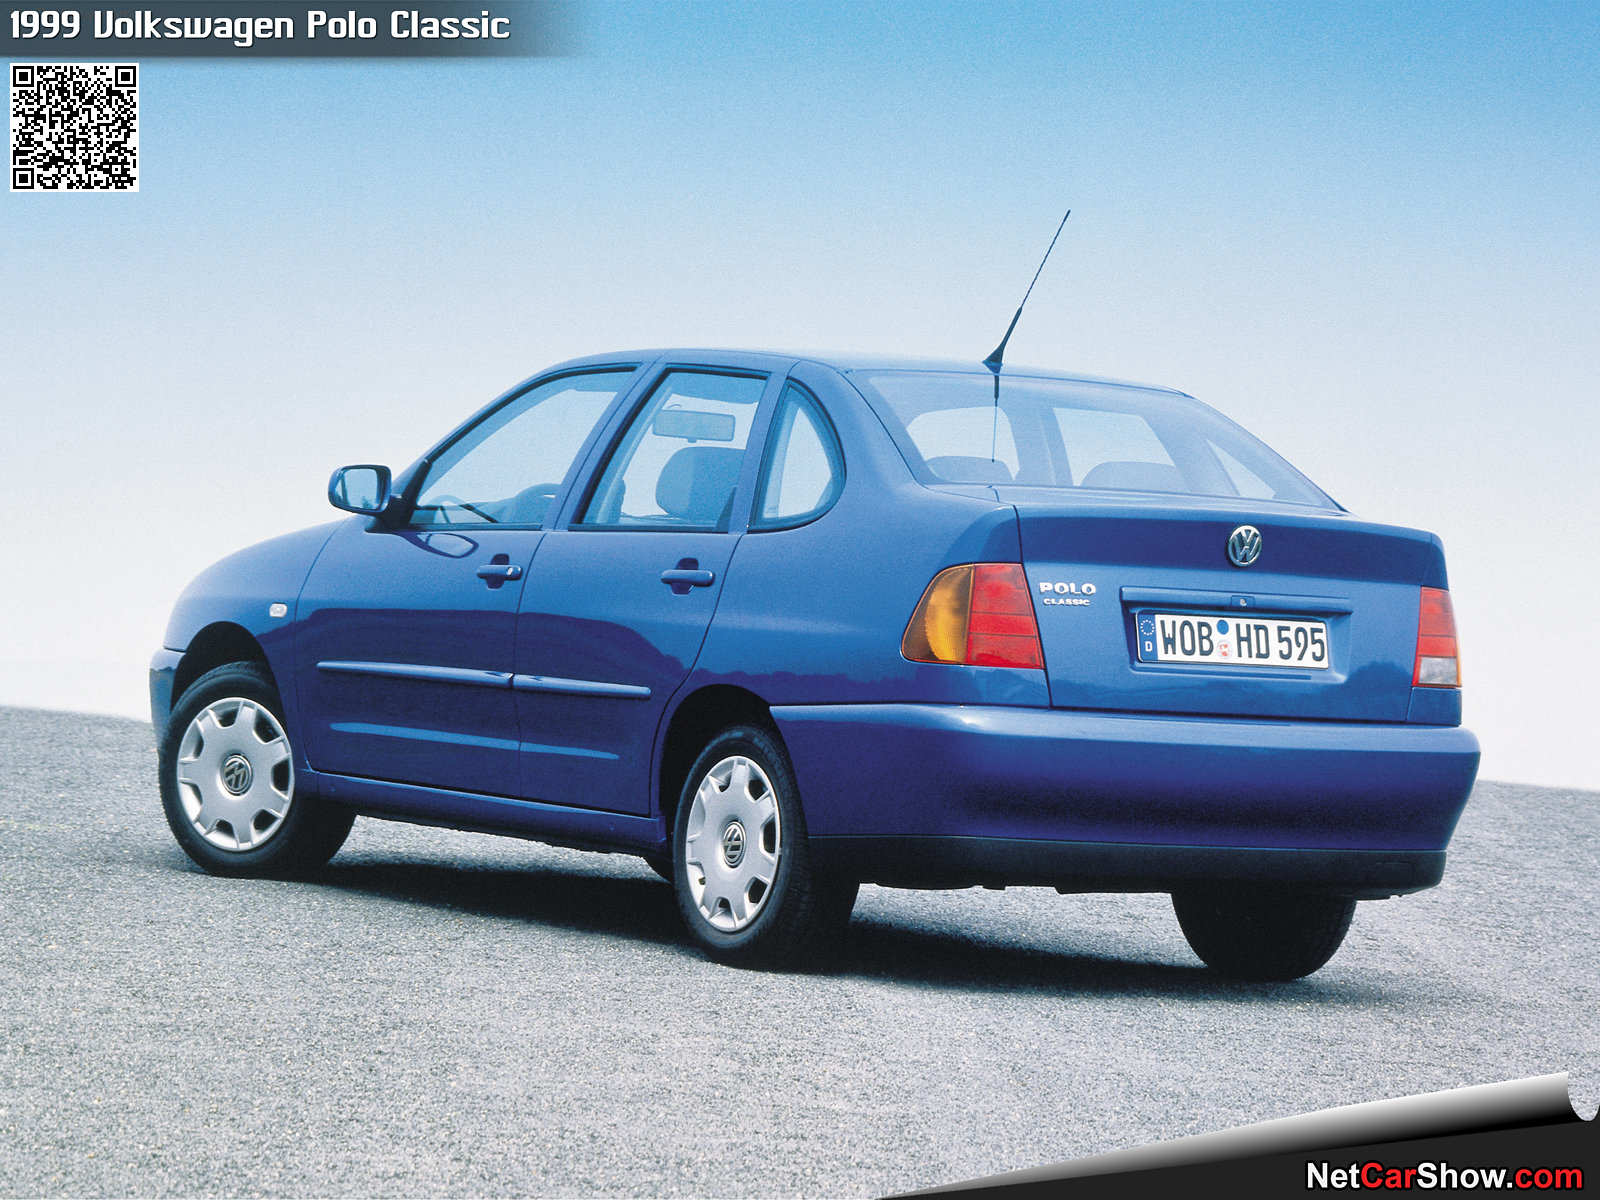 Volkswagen-Polo_Classic-1999-1600-06.jpg